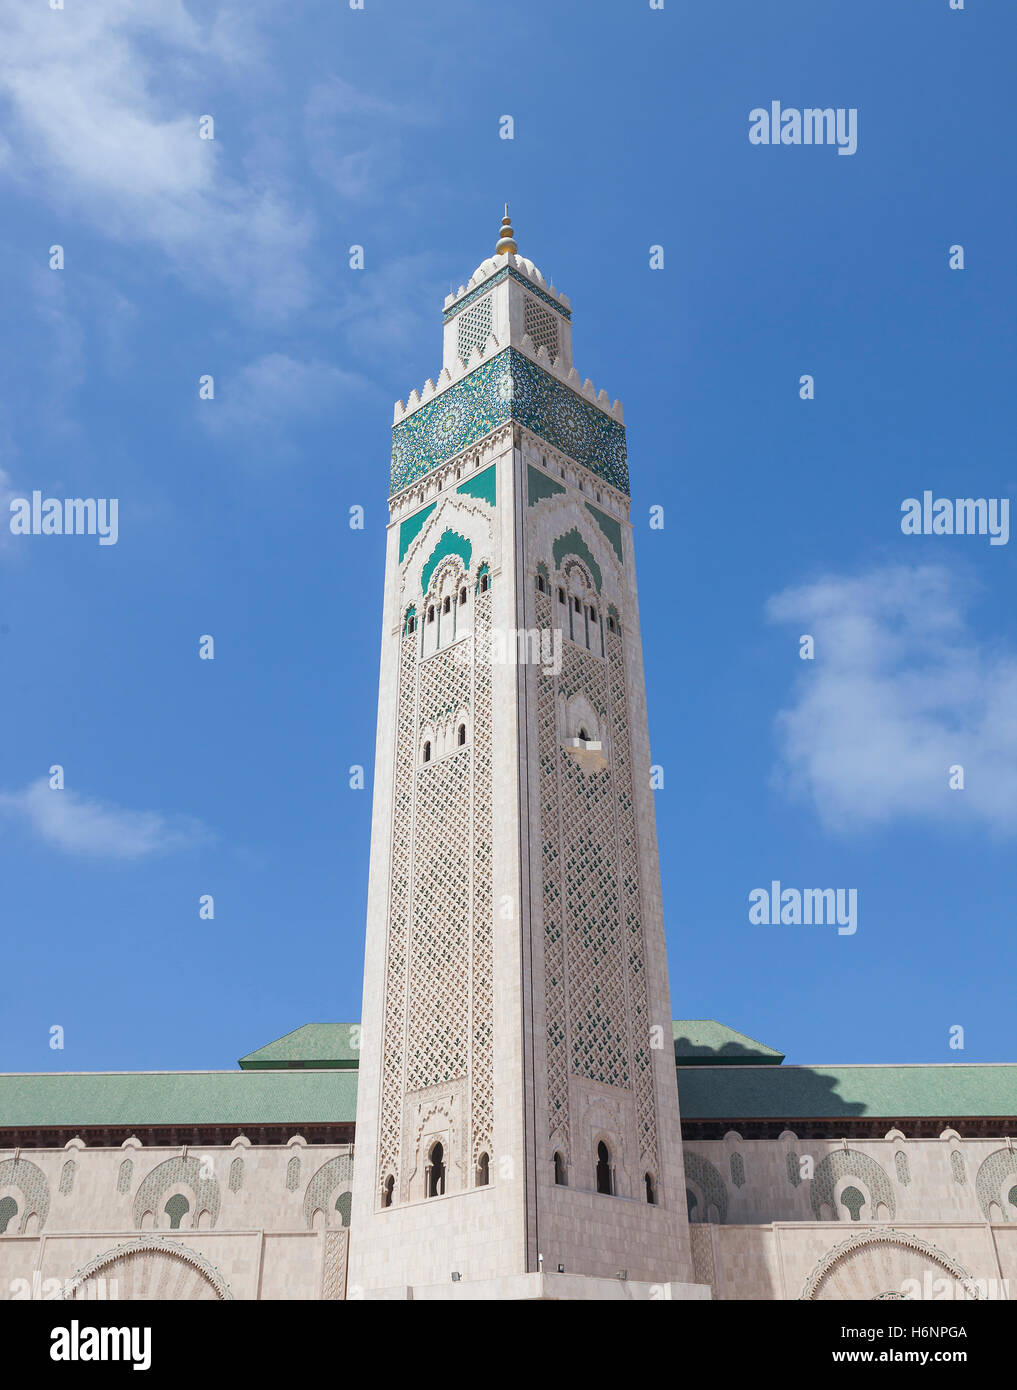 Mosque Hassan II in Casablanca Stock Photo